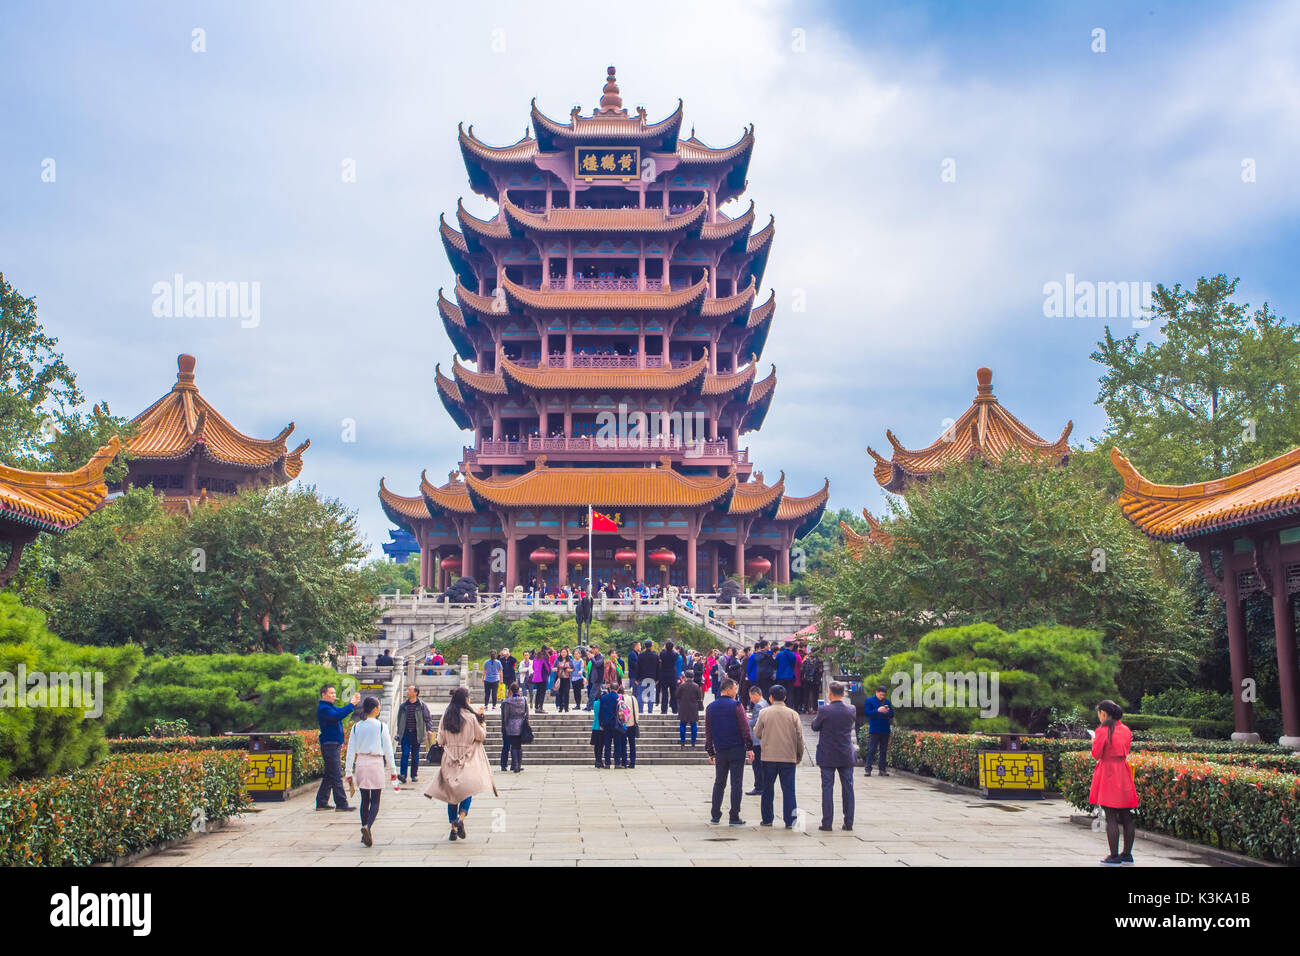 China, Wuhan City, Yellow Crane Tower Stock Photo